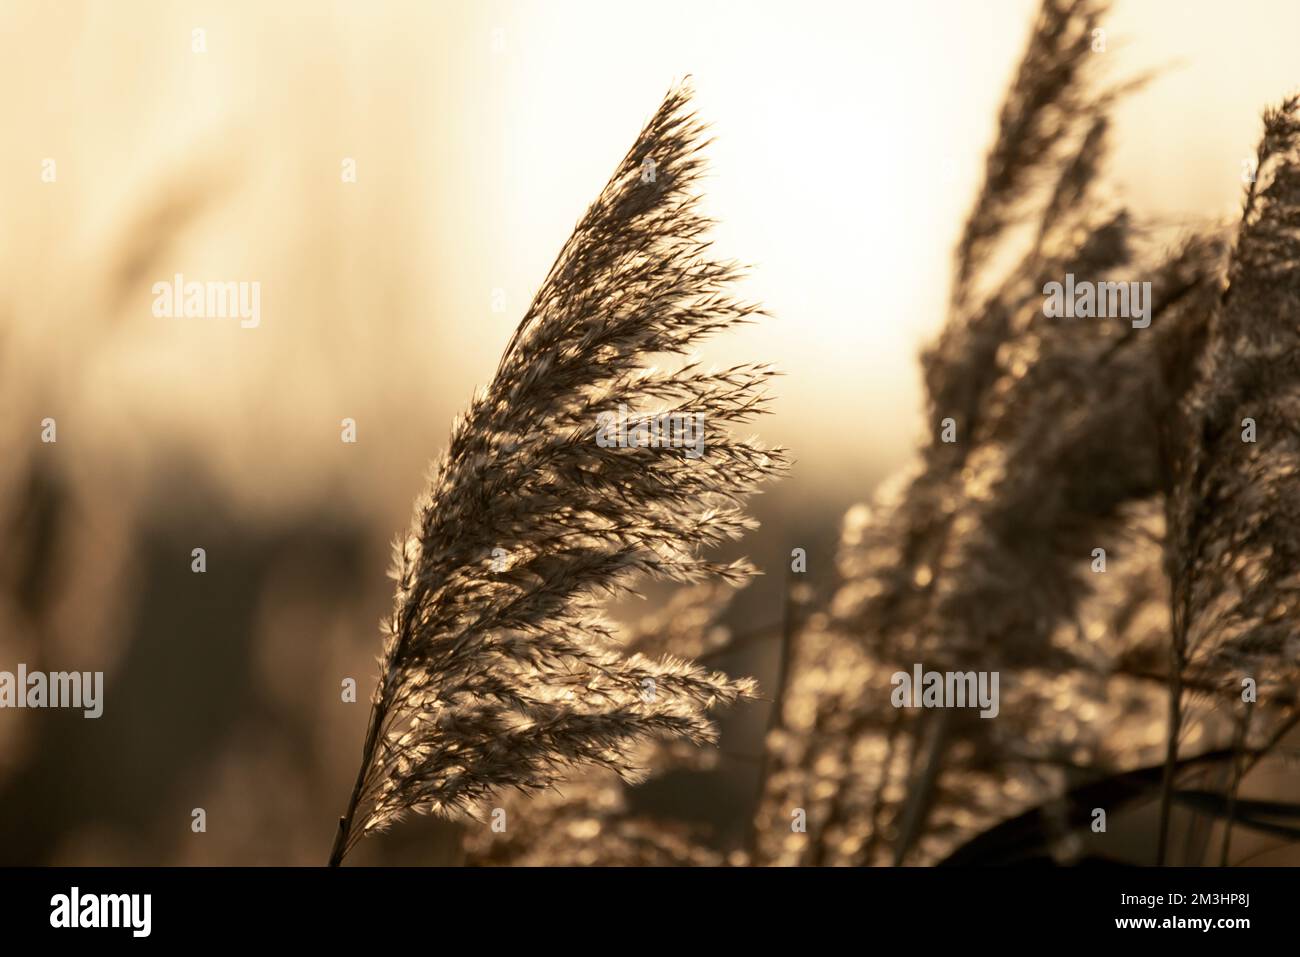 Roseau côtière sèche sur un arrière-plan flou lors d'une journée d'hiver ensoleillée, vue rapprochée avec mise au point sélective douce. Photo naturelle abstraite Banque D'Images